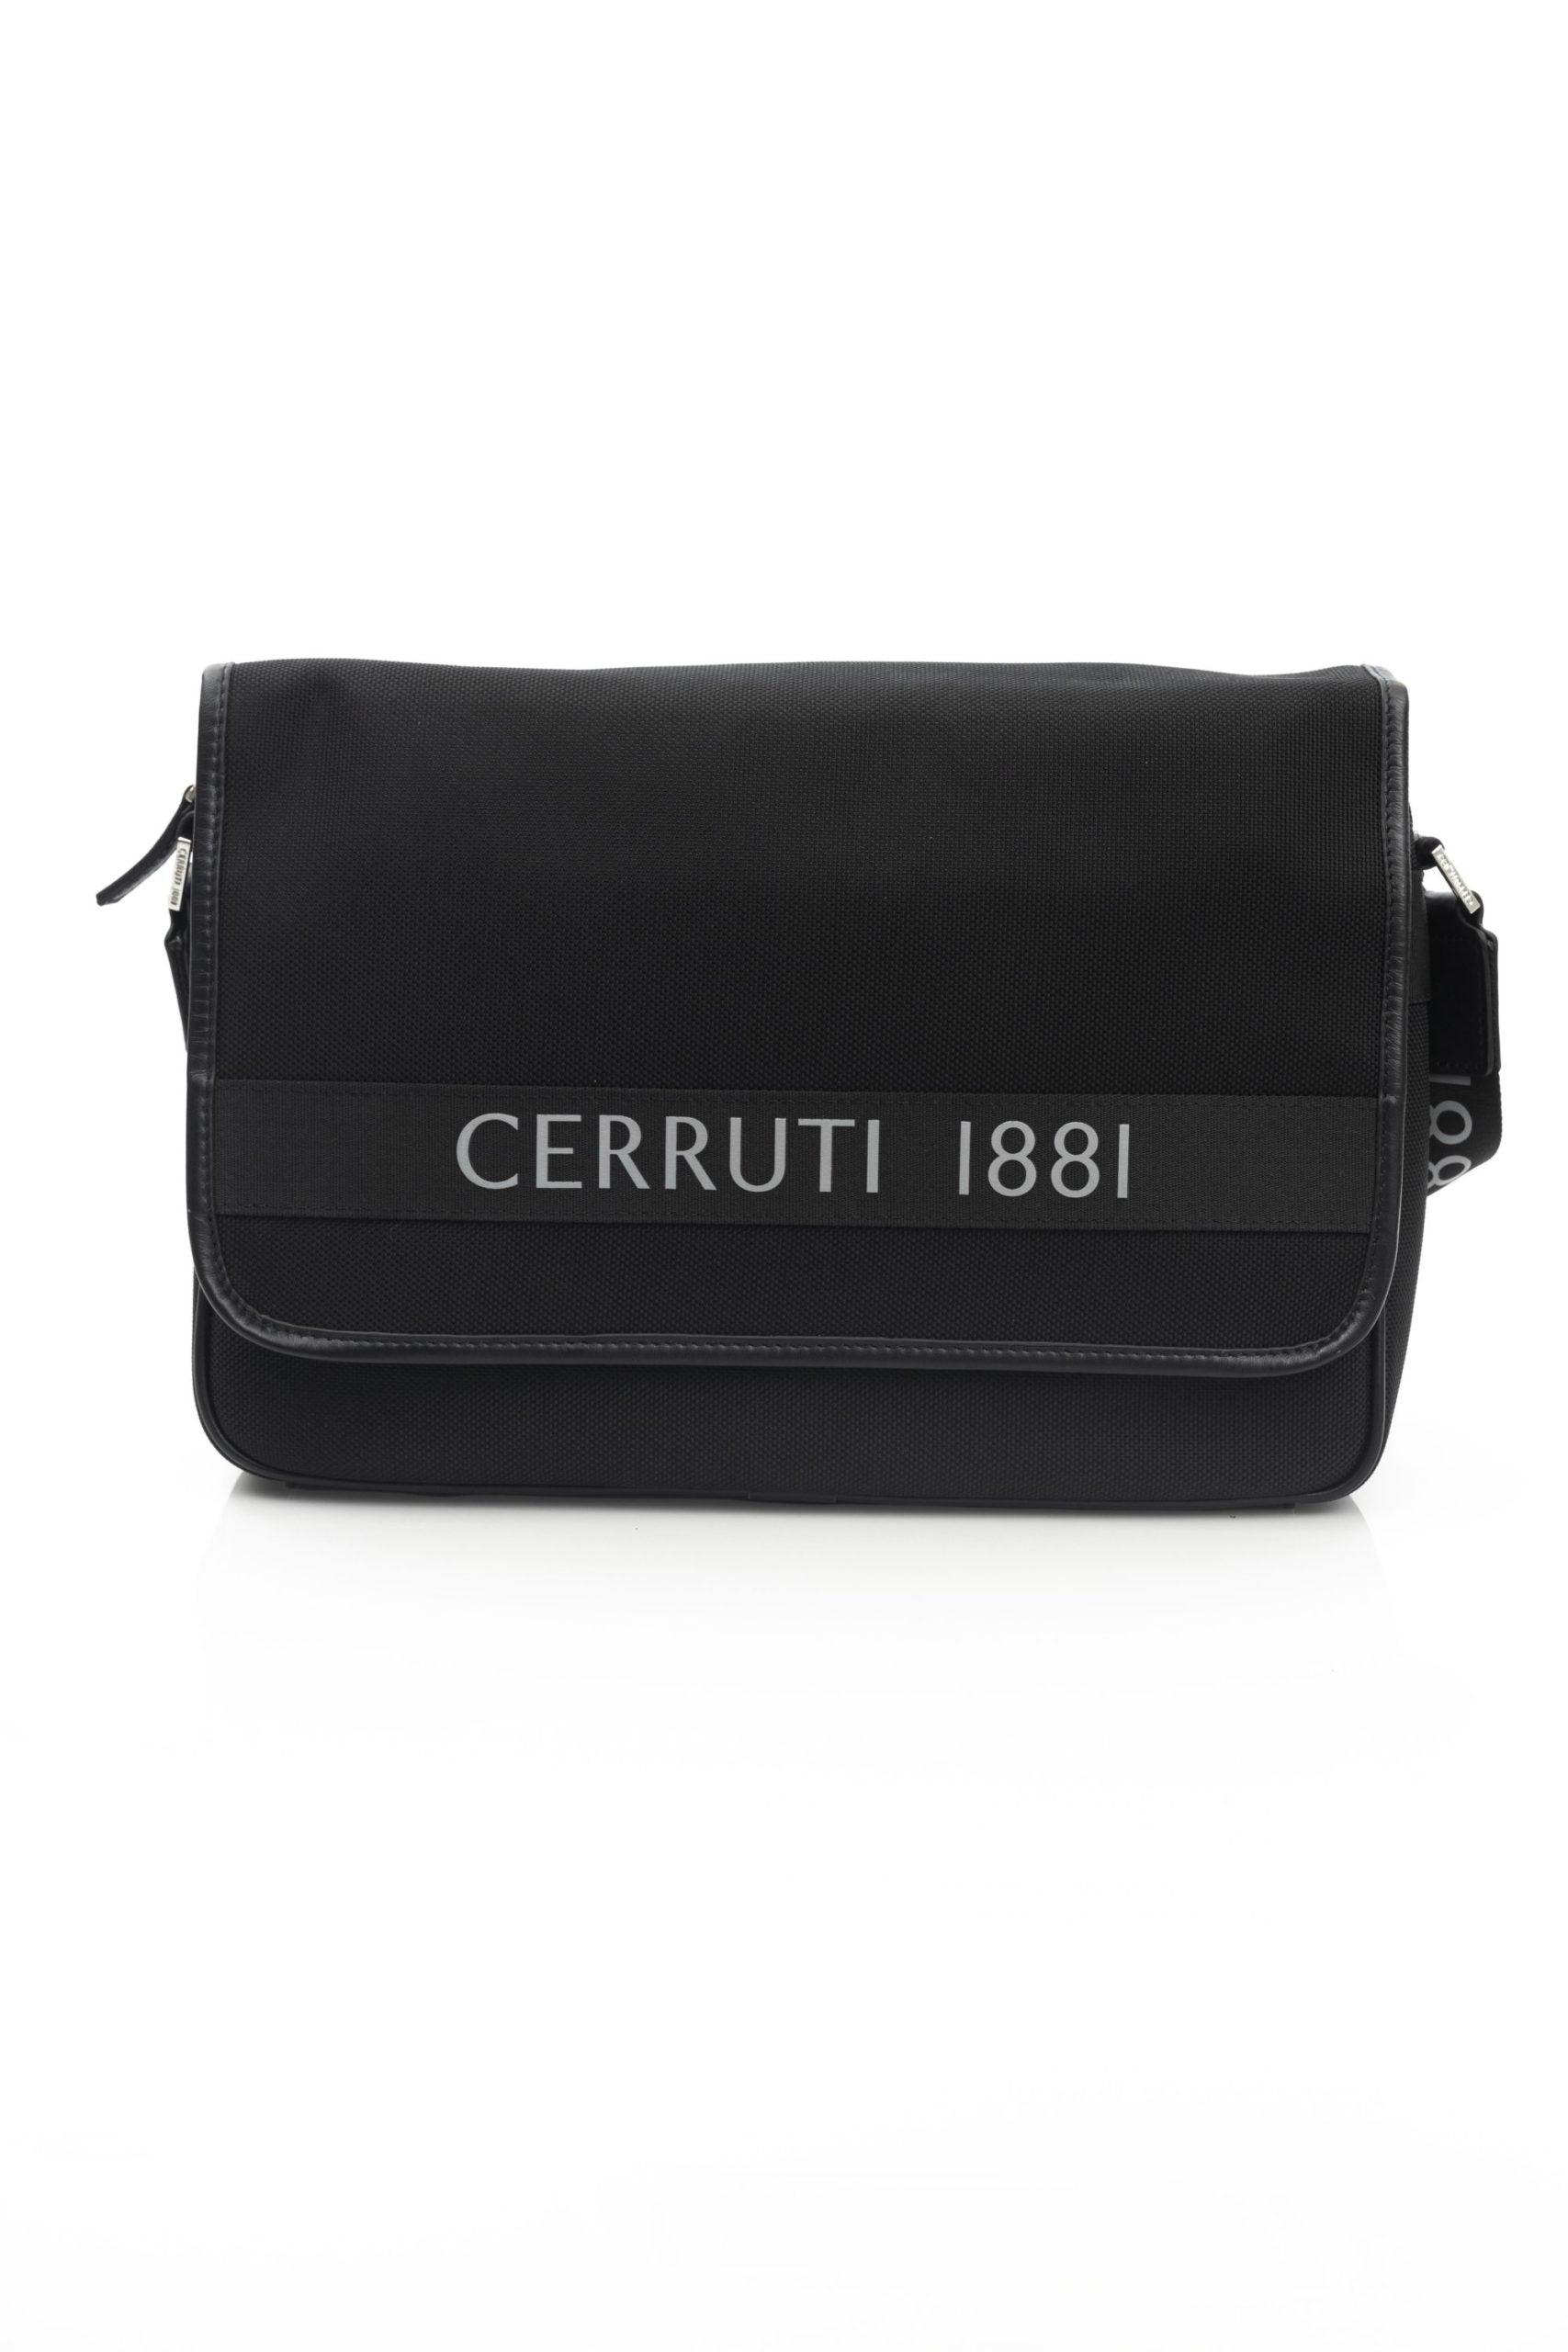 Cerruti 1881 Nylon Messenger Bag in Black for Men | Lyst UK